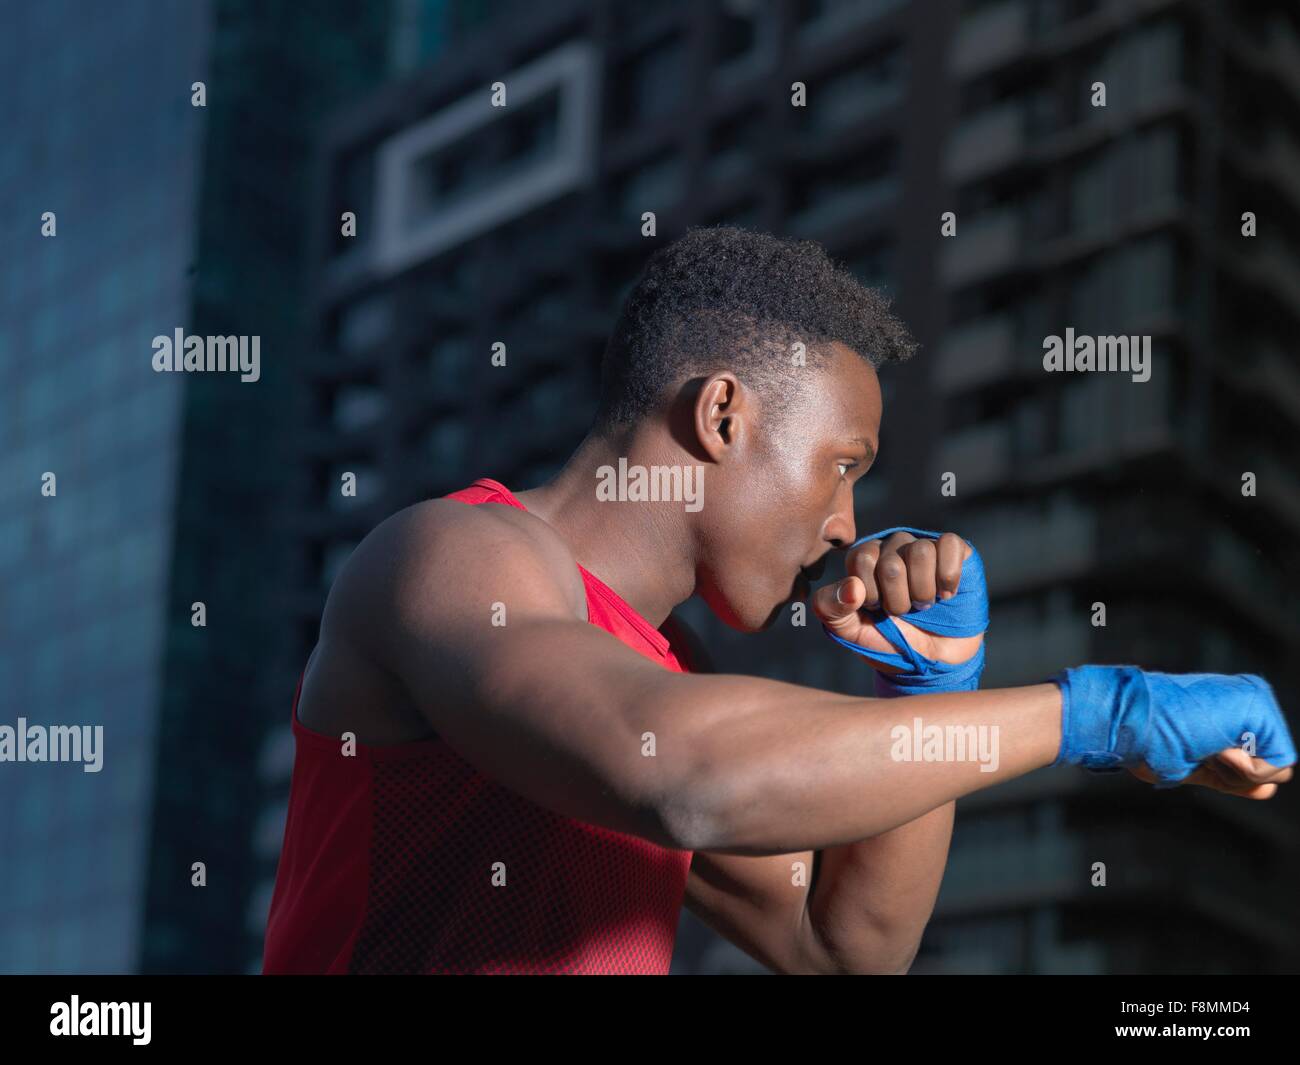 Ritratto di boxer gettando il punzone, edificio in background Foto Stock